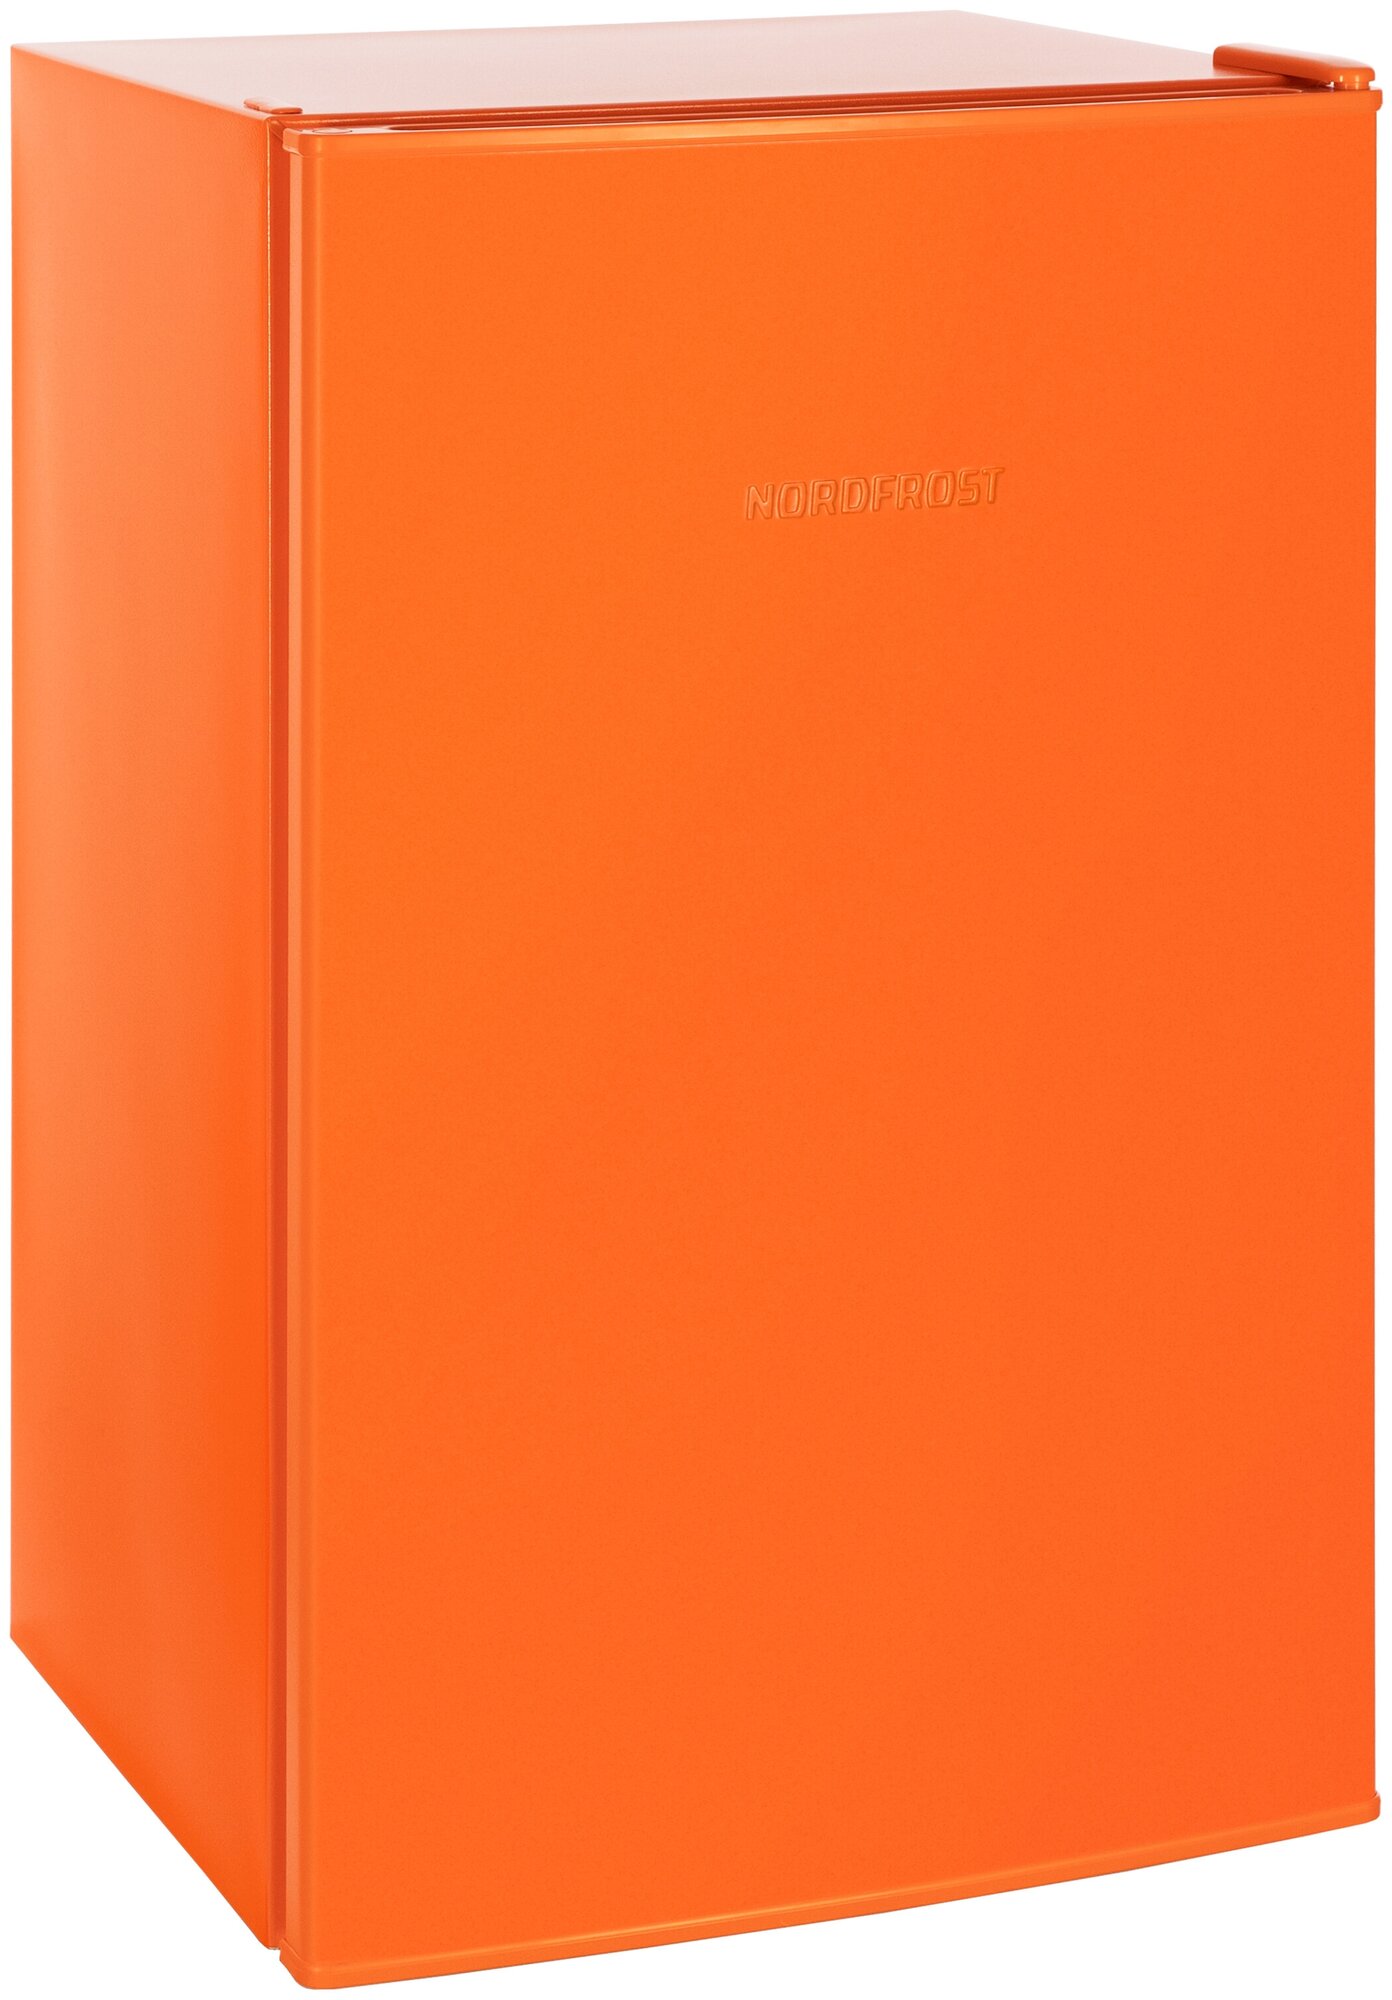 Холодильник NORDFROST NR 403 Or однокамерный с НТО, 111 л, оранжевый матовый